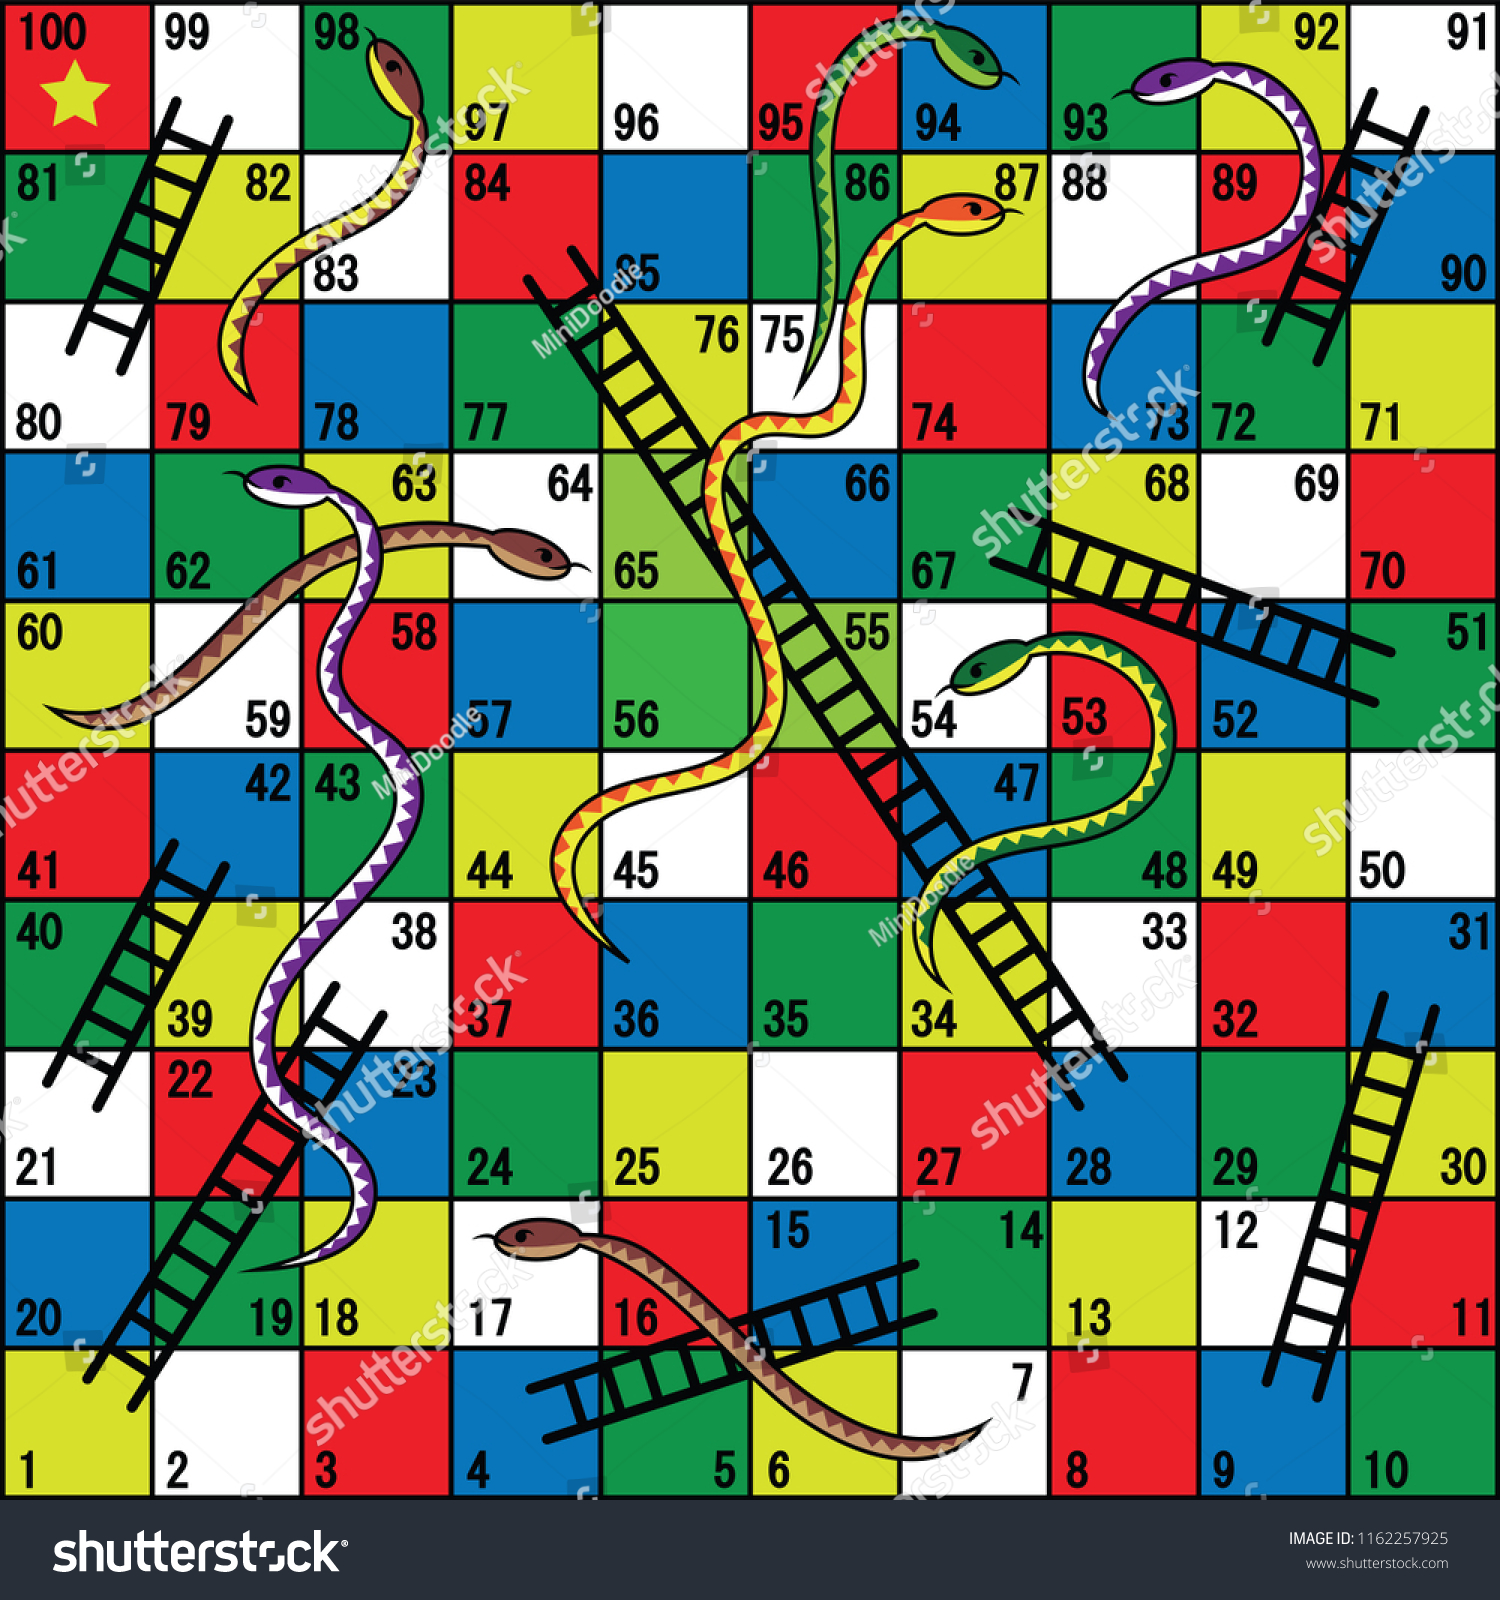 Snakes Ladders Board Game Snakes Ladders: เวกเตอร์สต็อก (ปลอดค่าลิขสิทธิ์)  1162257925